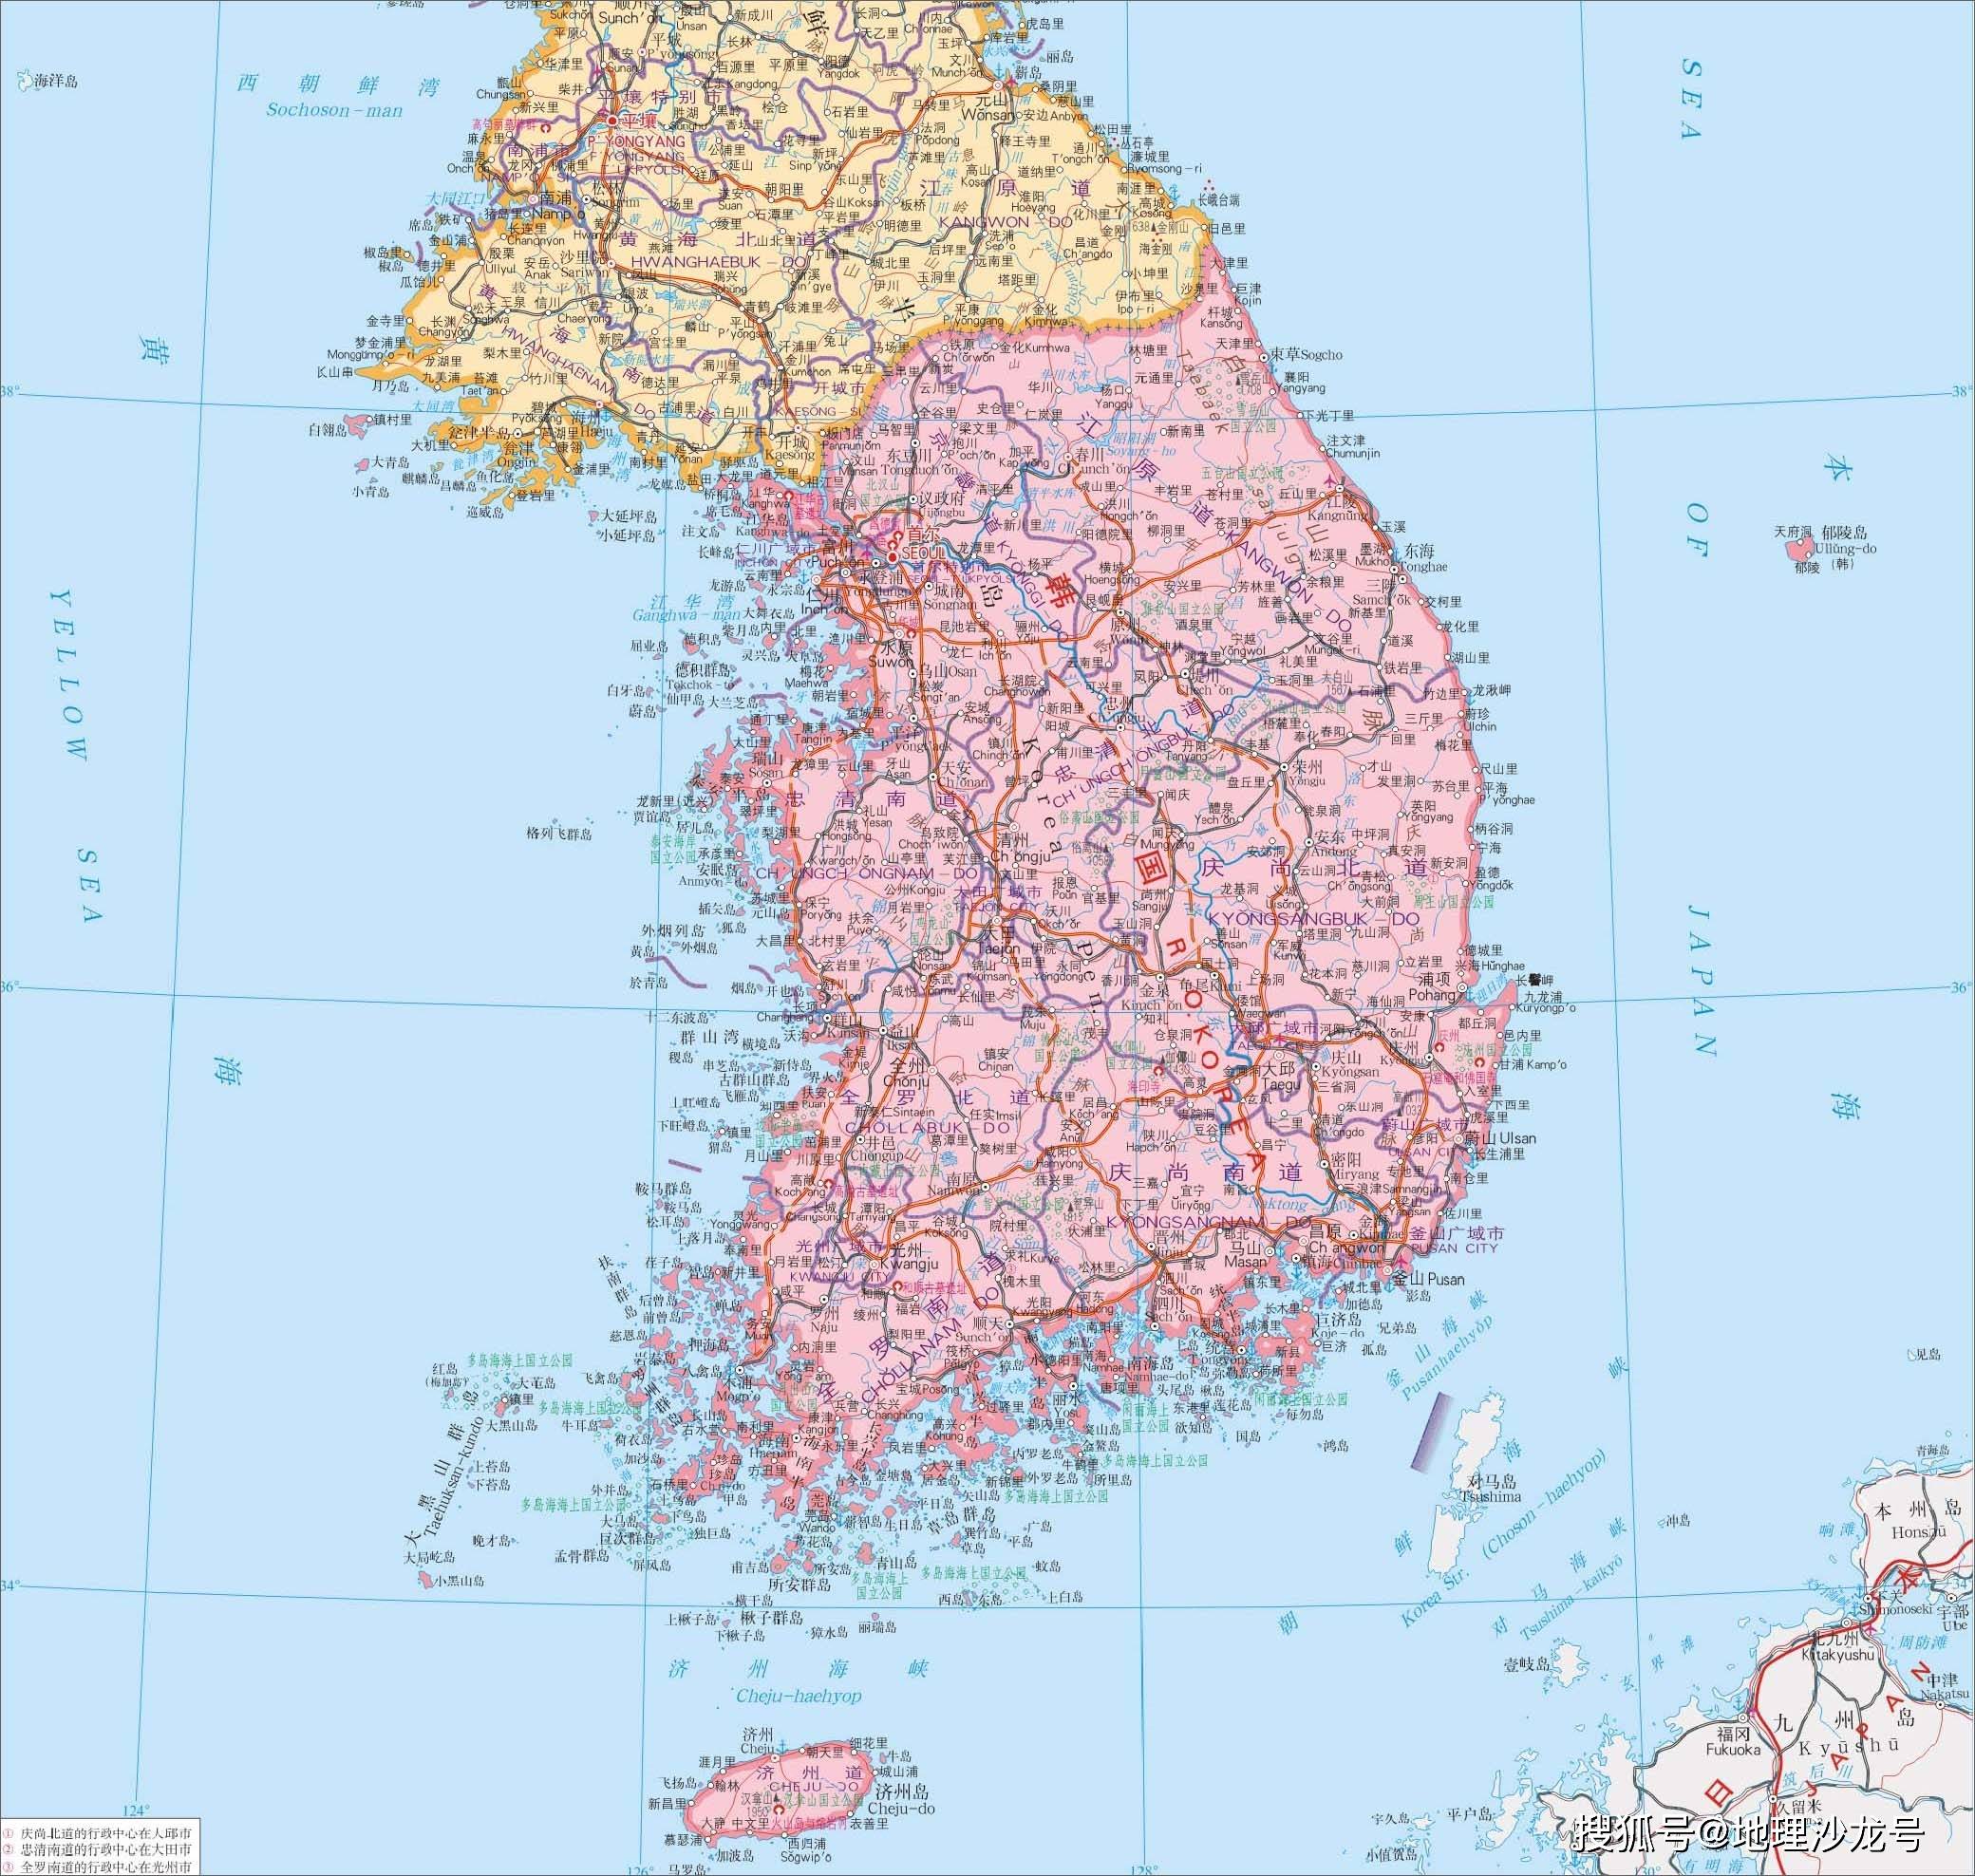 原创近年来韩国首都首尔的人口数量不断减少是什么原因导致的